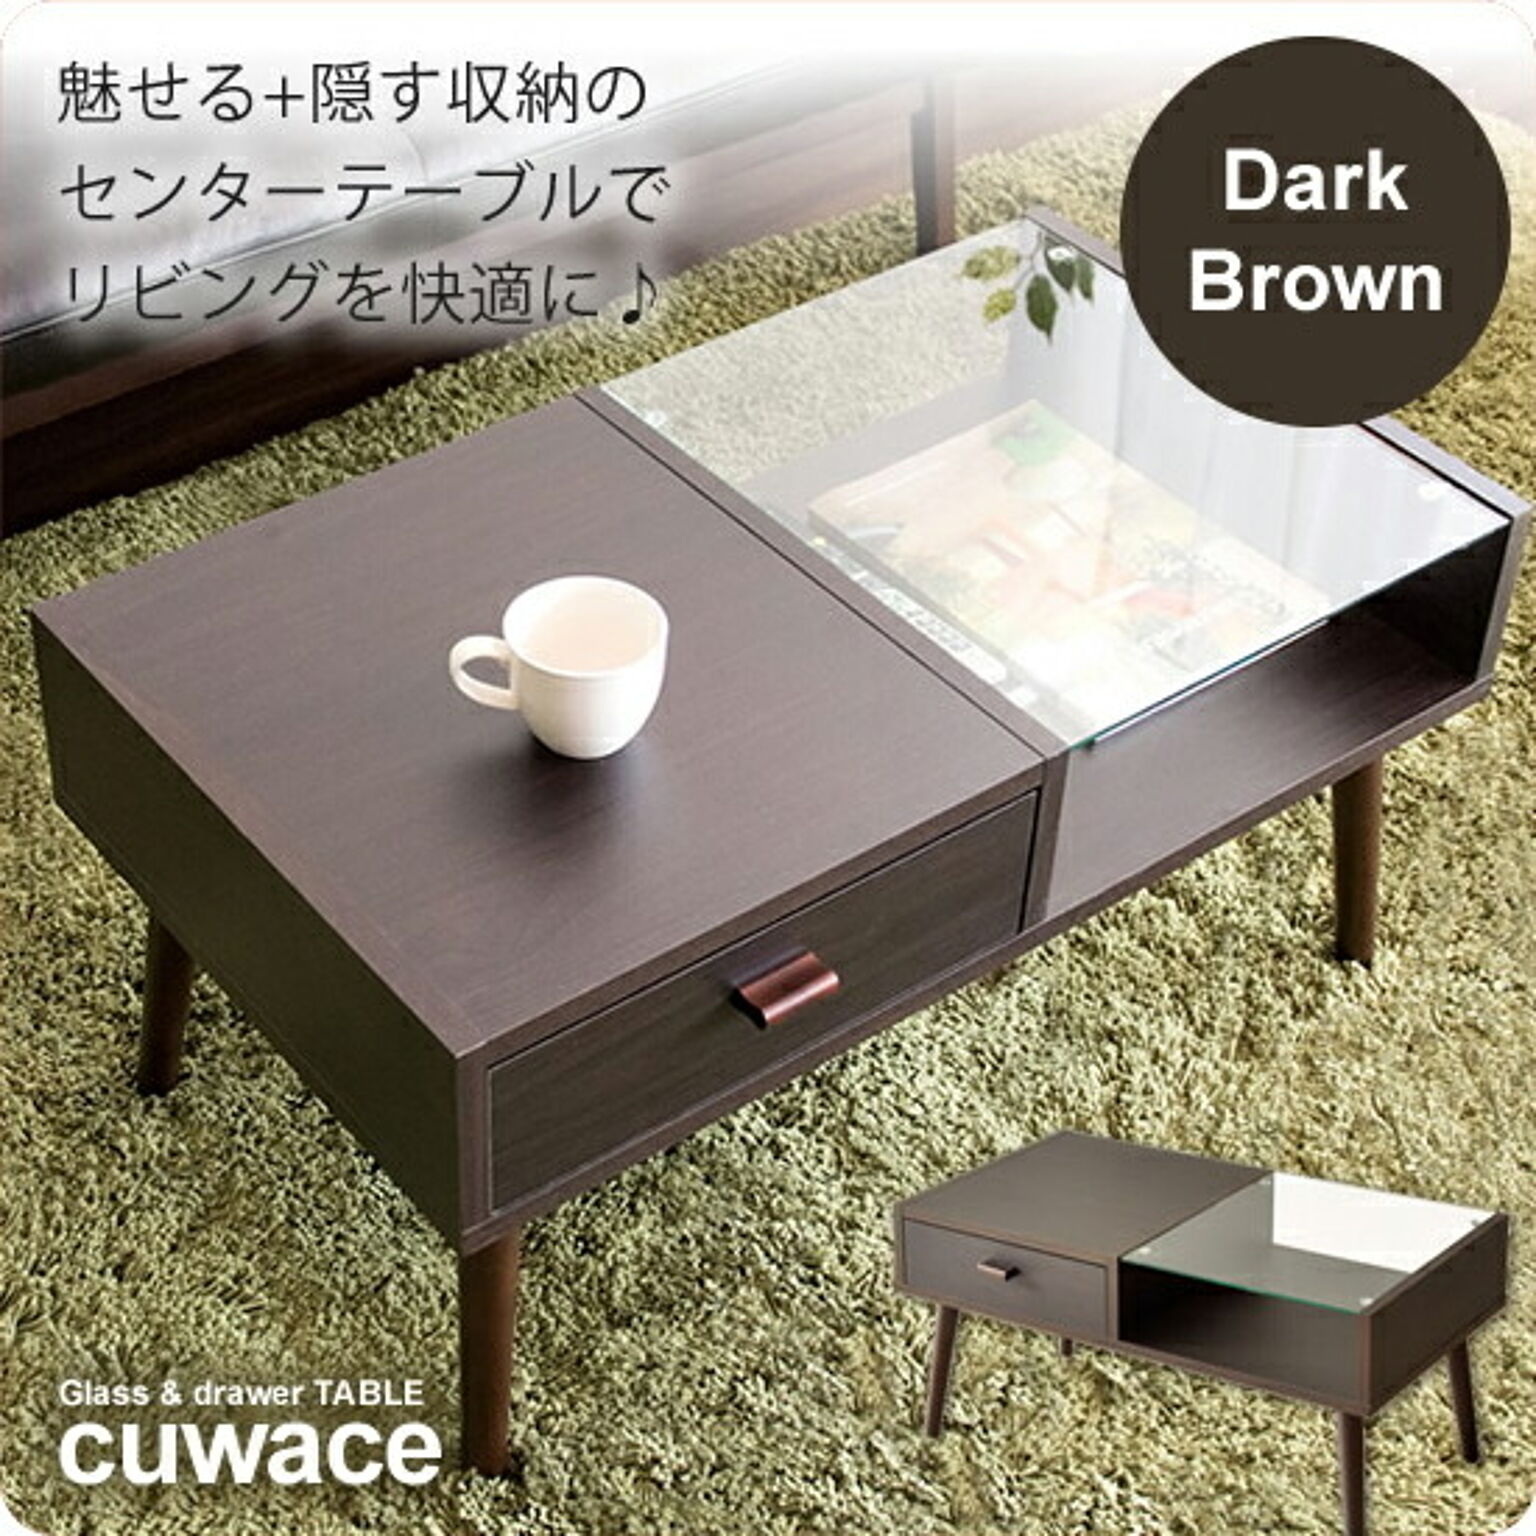 センターテーブル ローテーブル コーヒーテーブル ガラステーブル ： ダークブラウン【cuwace】 ブラウン(brown) (アーバン) リビングテーブル 